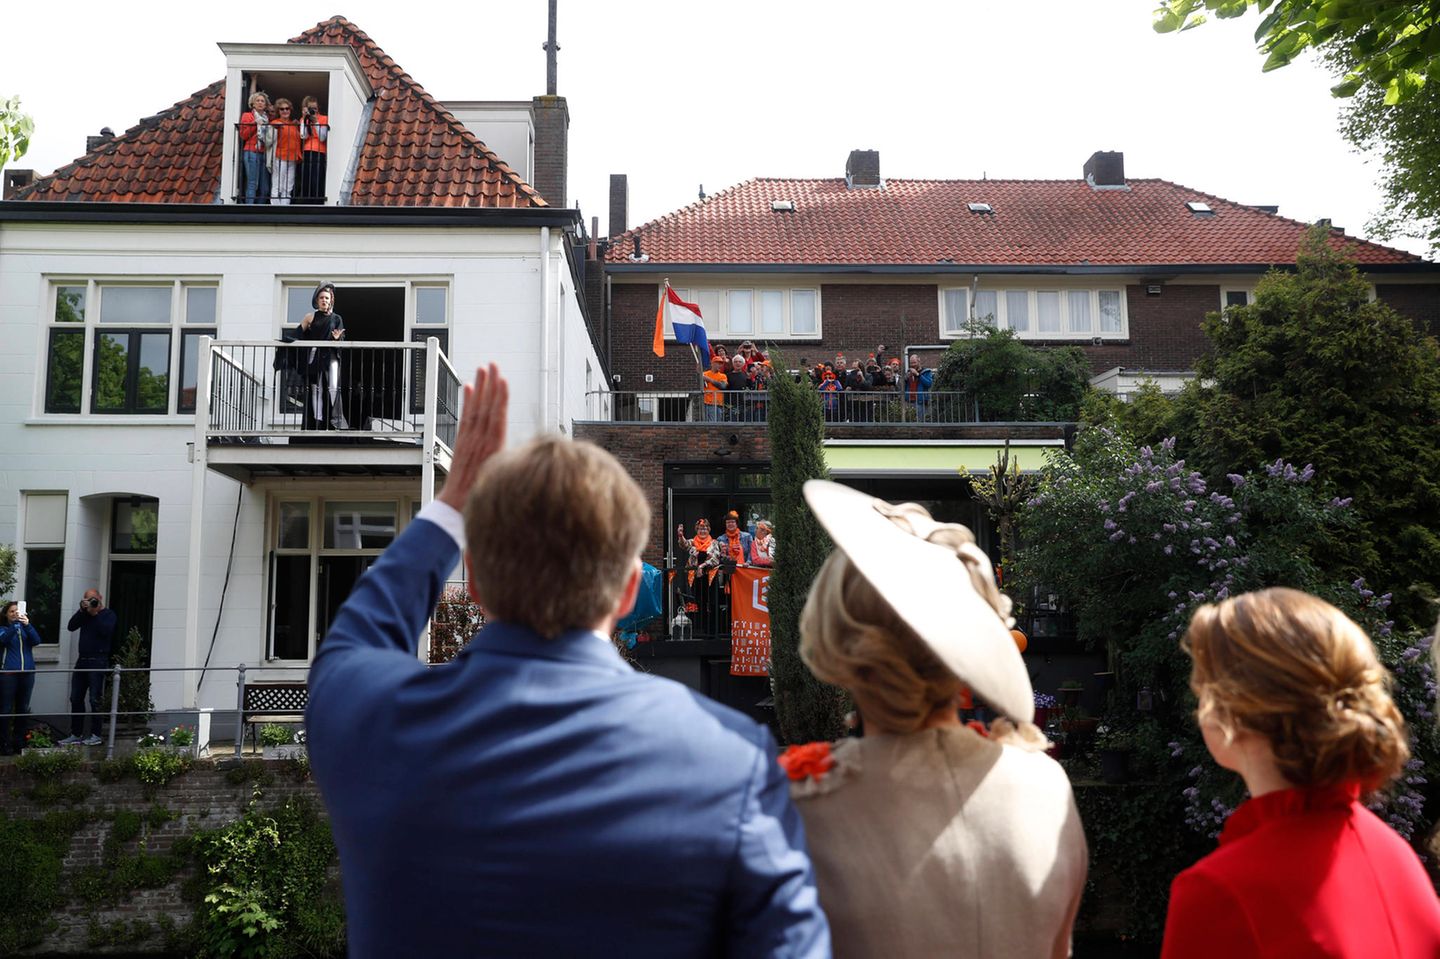 Überall versuchen die Zuschauer einen guten Blick auf die Königsfamilie zu erhaschen. König Willem-Alexander nimmt sich sehr viel Zeit, um alle begrüßen zu können. 